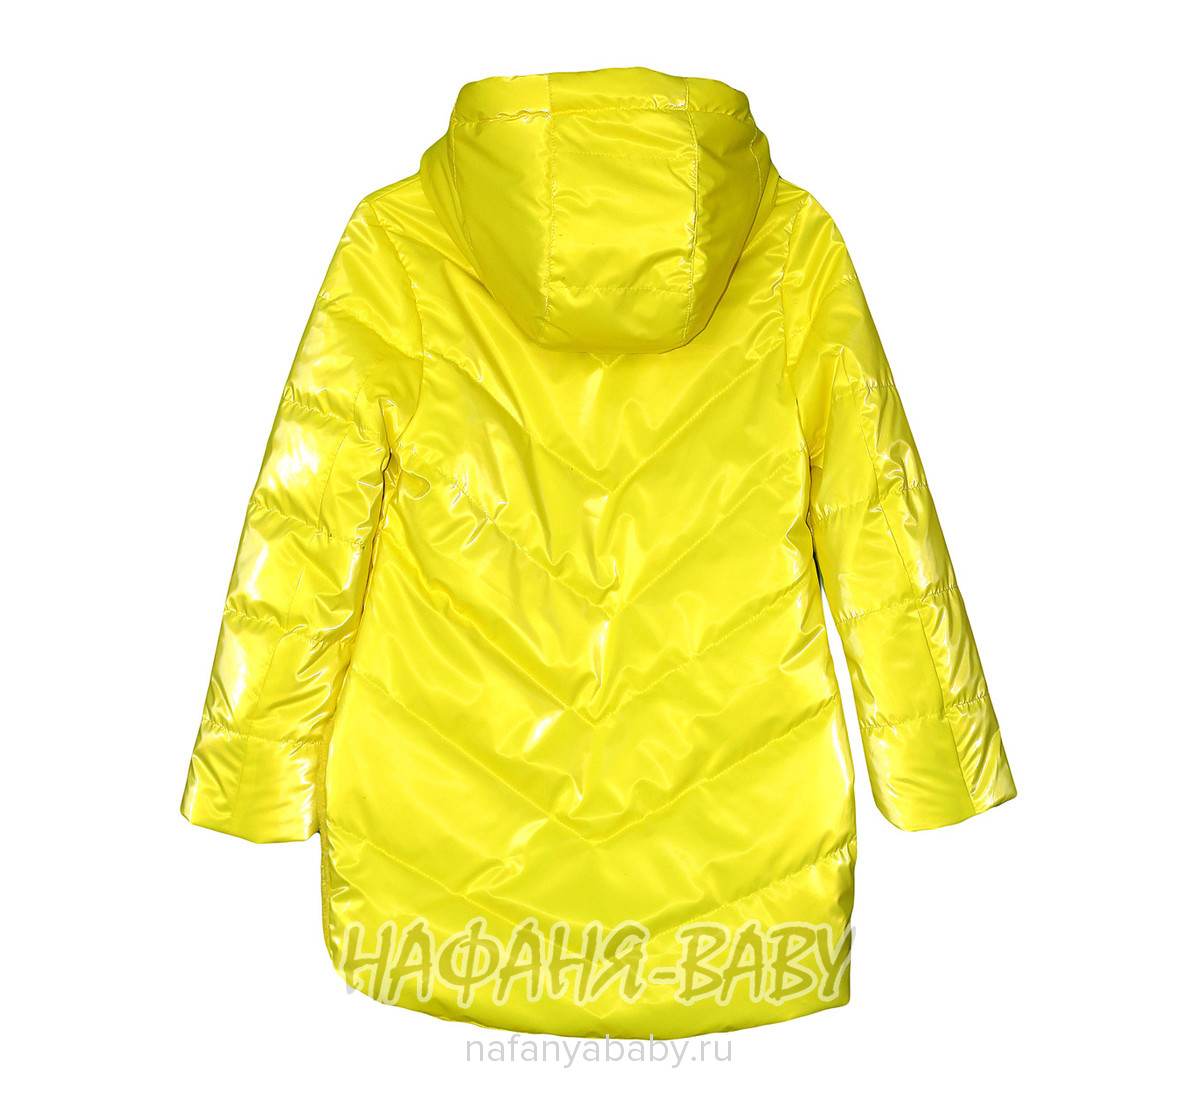 Детская демисезонная куртка FSD арт: 1032, 5-9 лет, цвет желтый, оптом Китай (Пекин)